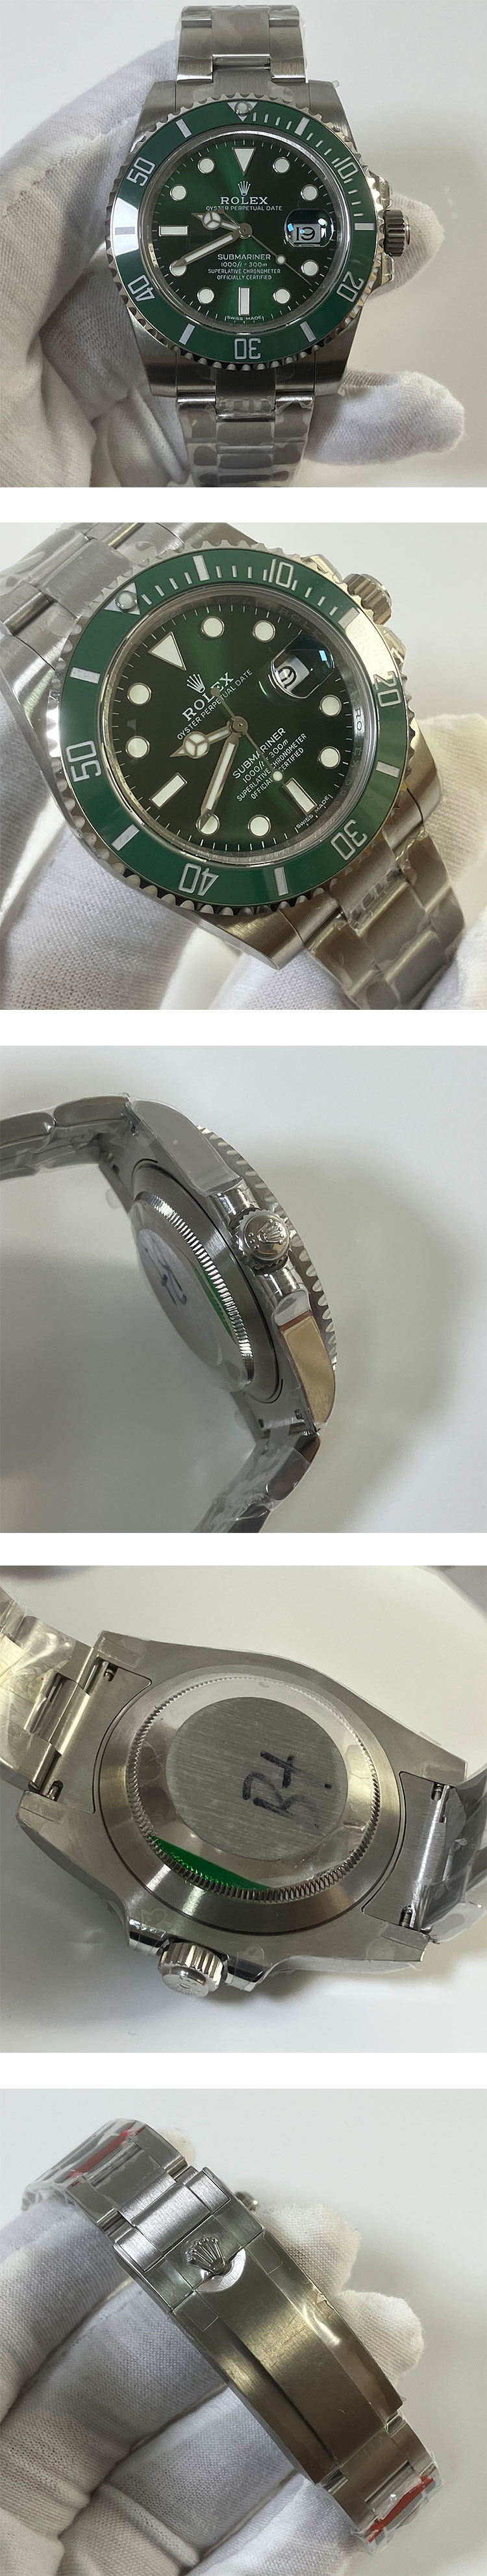 【プレゼント・ギフトに最適】高級感のロレックス サブマリーナーコピーRef.116610LV 男性用腕時計